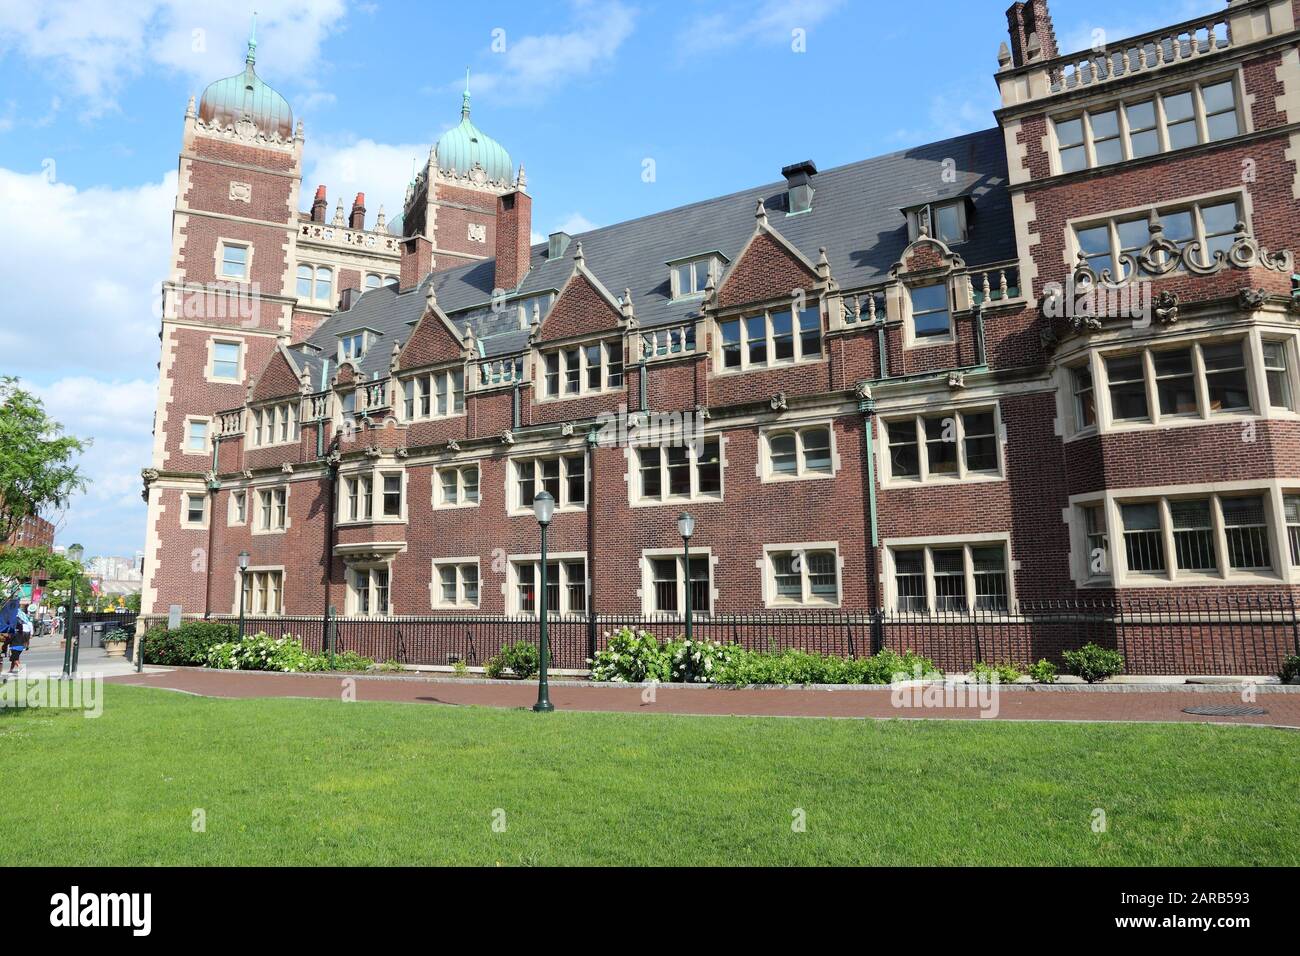 Philadelphia USA - Pennsylvania State University (Penn State). Quadrangle  architecture Stock Photo - Alamy